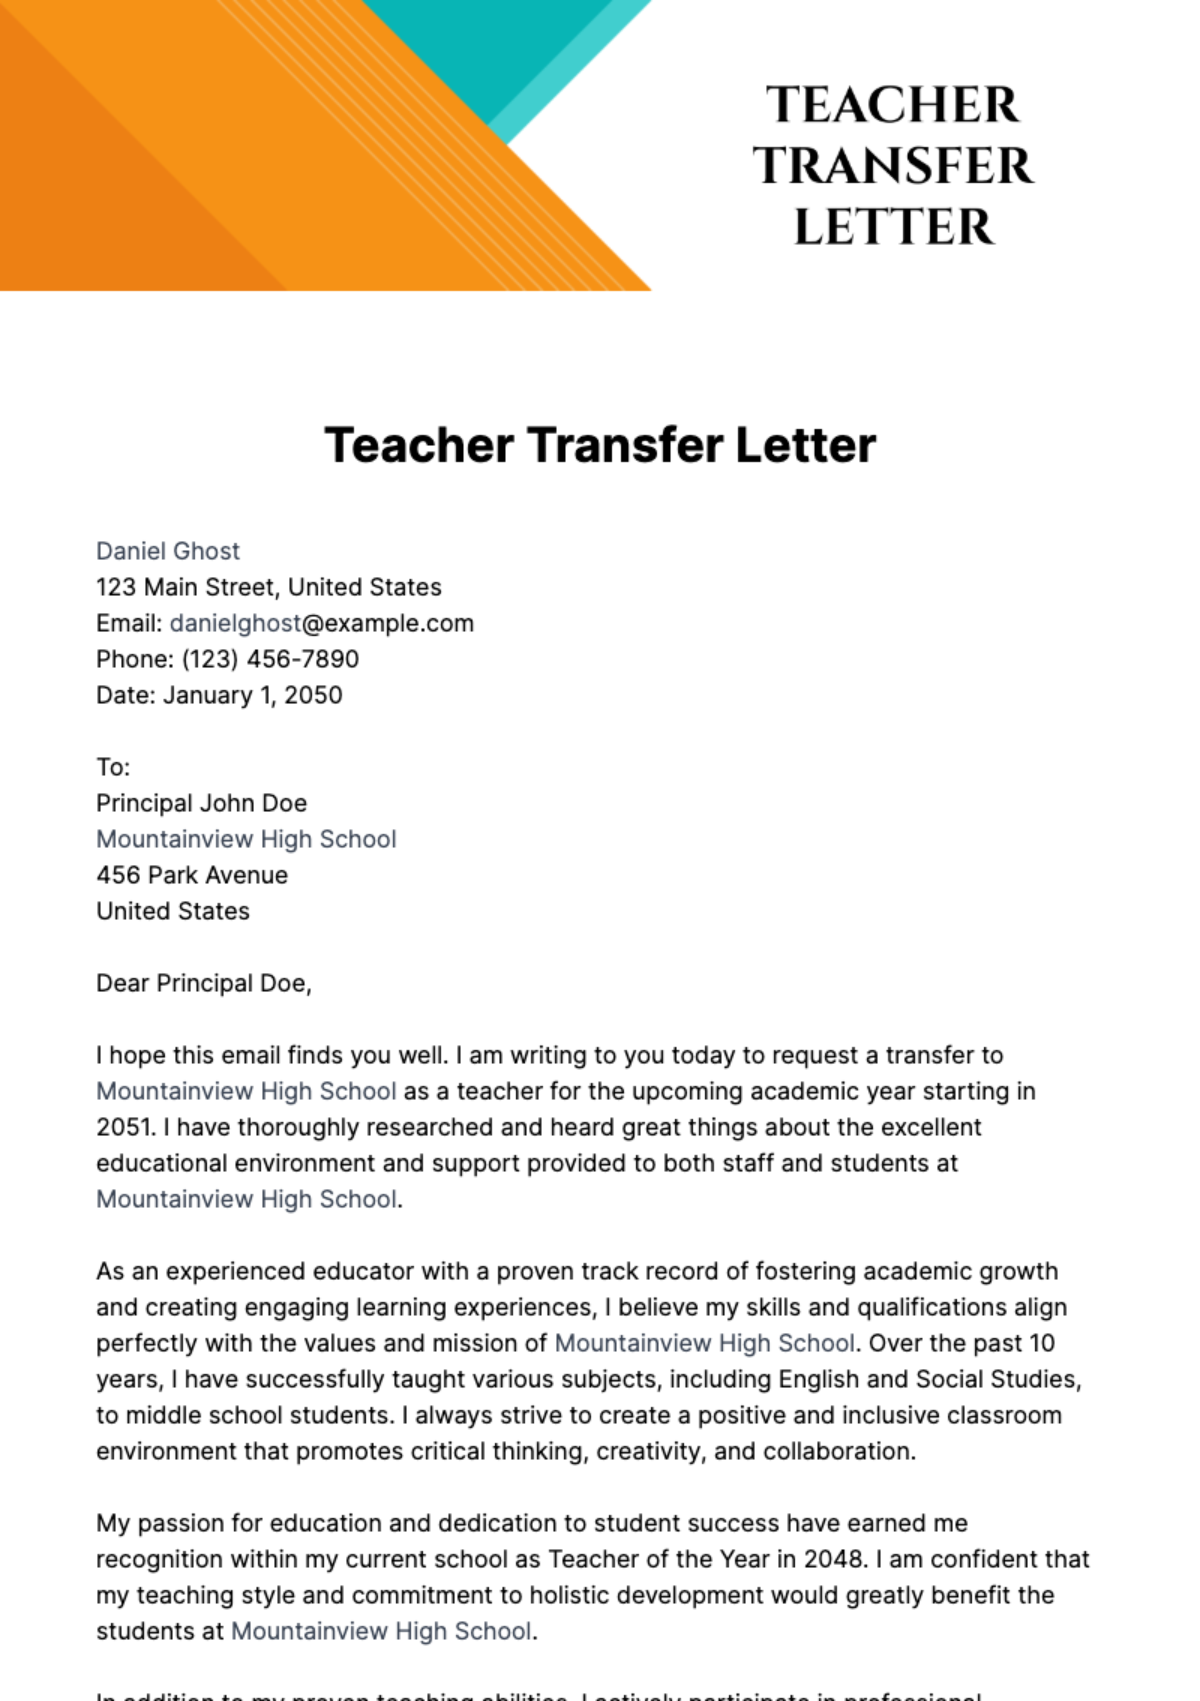 Free Teacher Transfer Letter Template